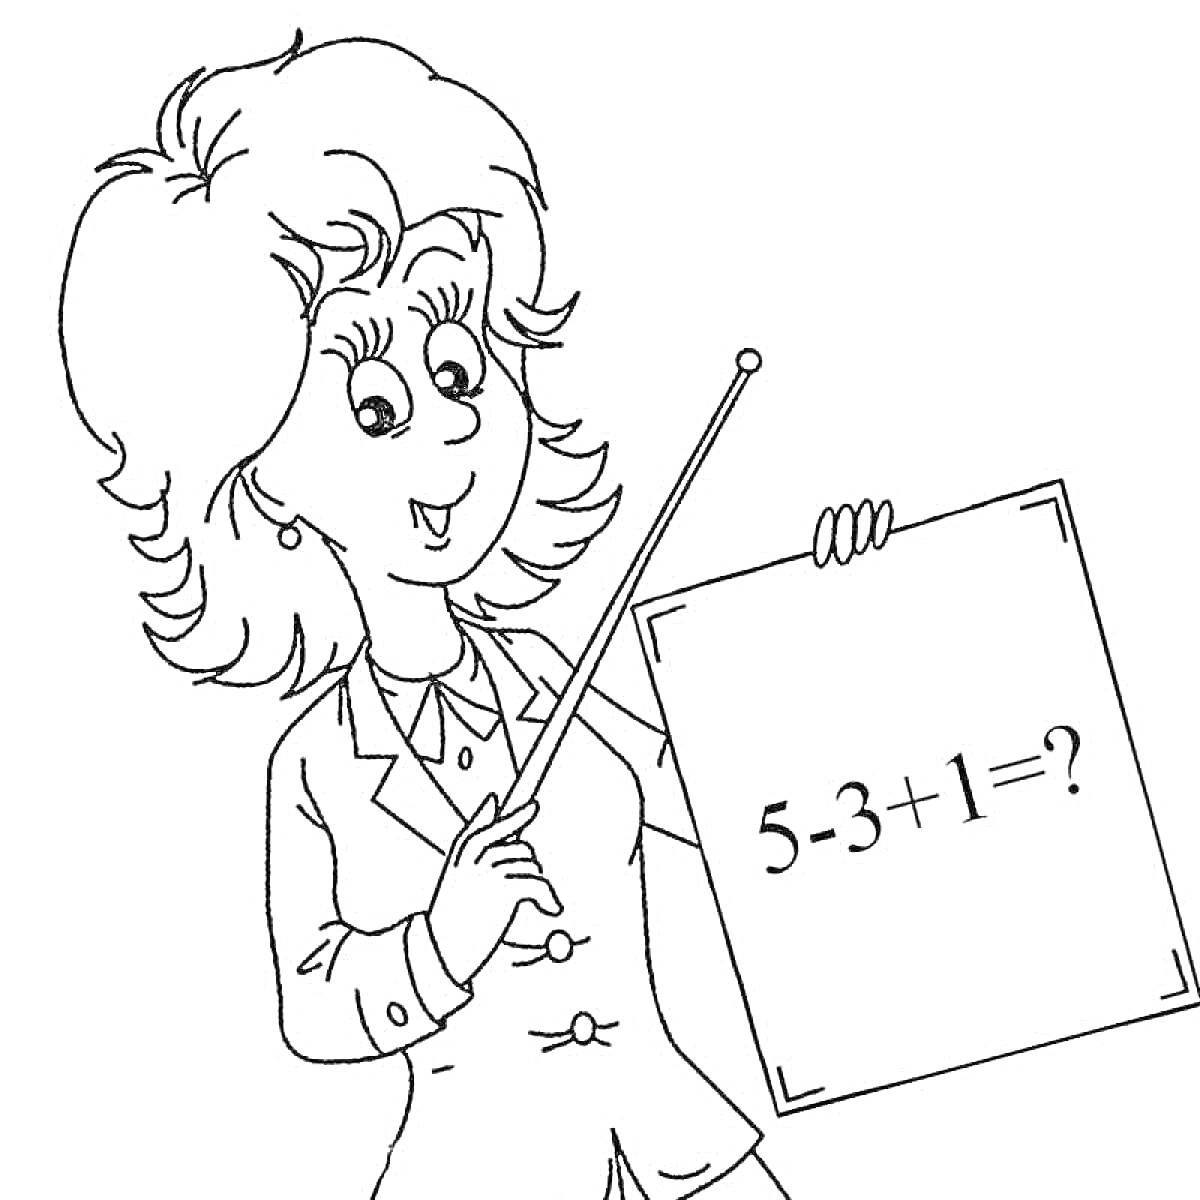 Учительница с плакатом, на котором написано уравнение 5 - 3 + 1 = ?